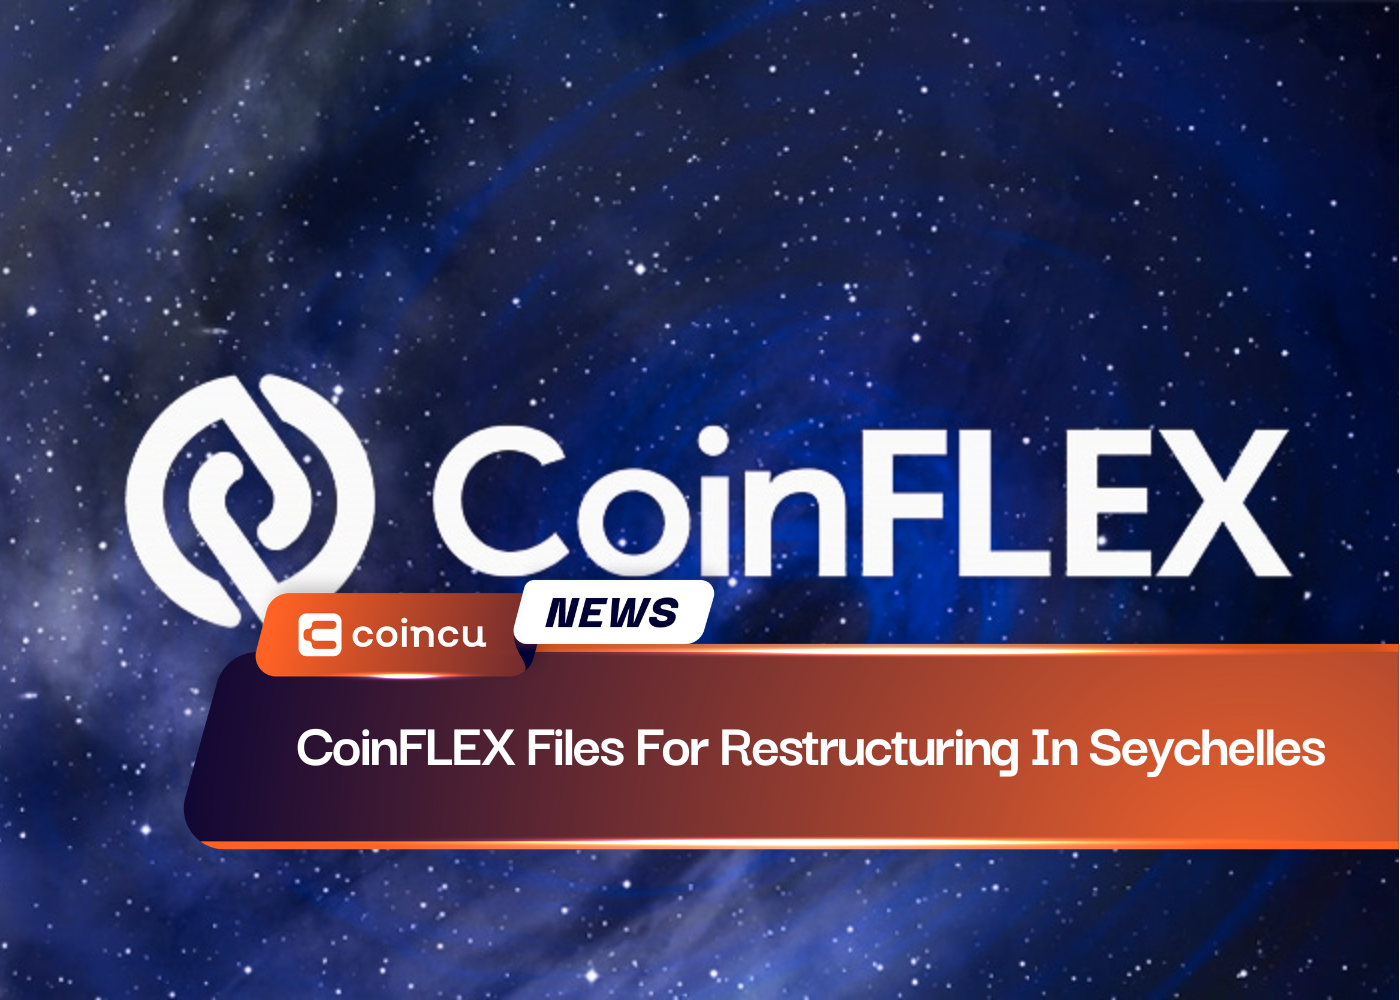 CoinFLEXがセイシェルで再編を申請